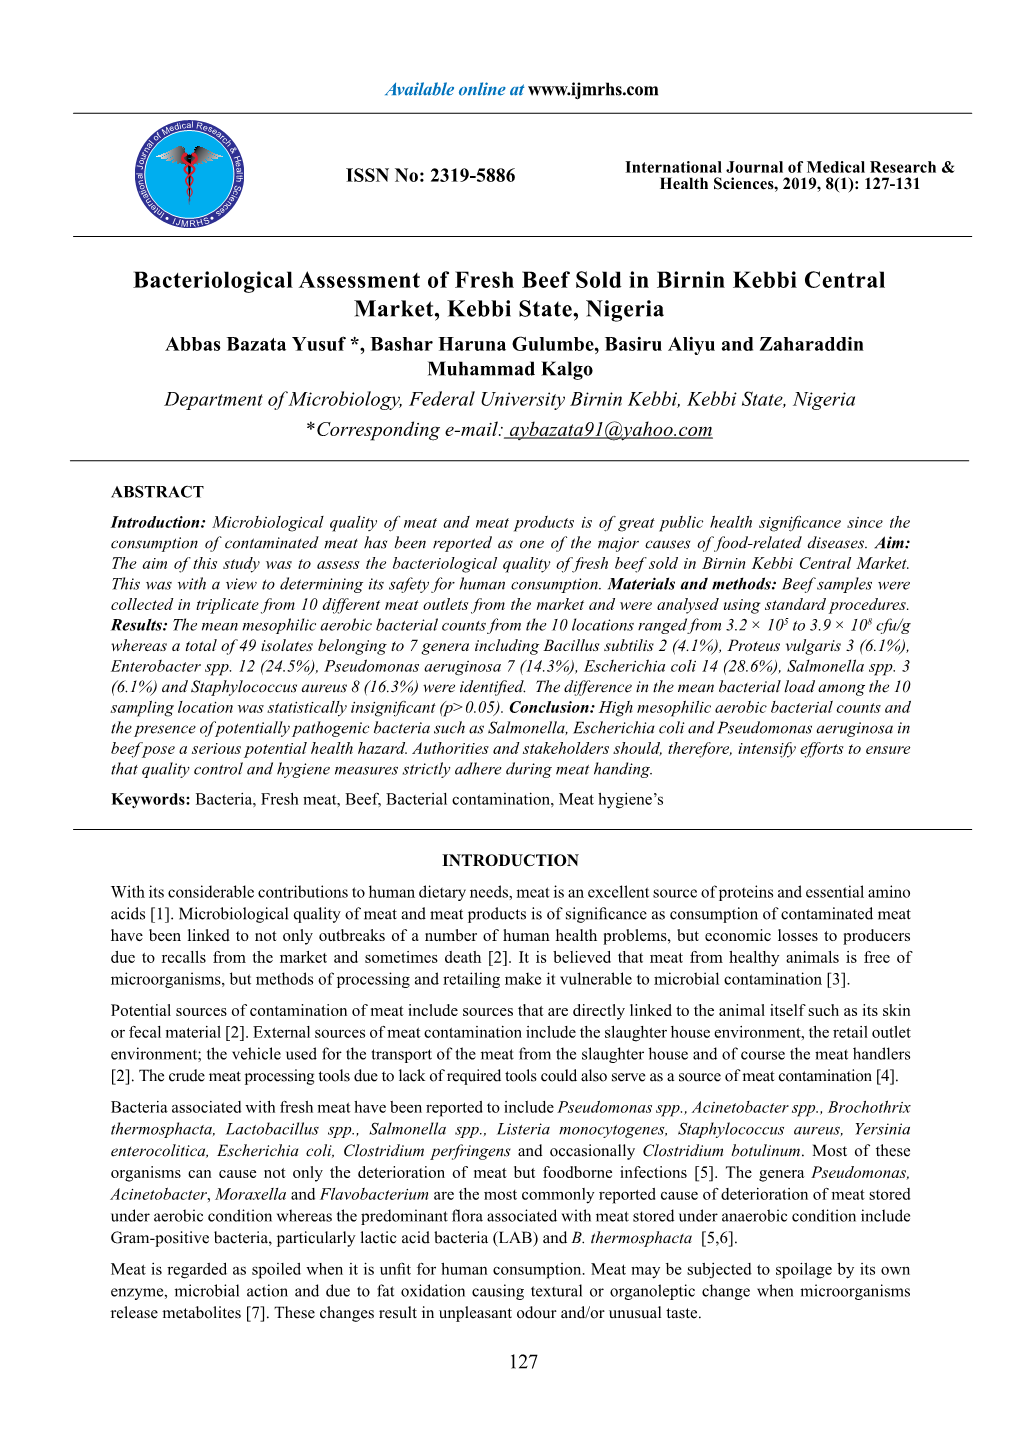 Bacteriological Assessment of Fresh Beef Sold in Birnin Kebbi Central